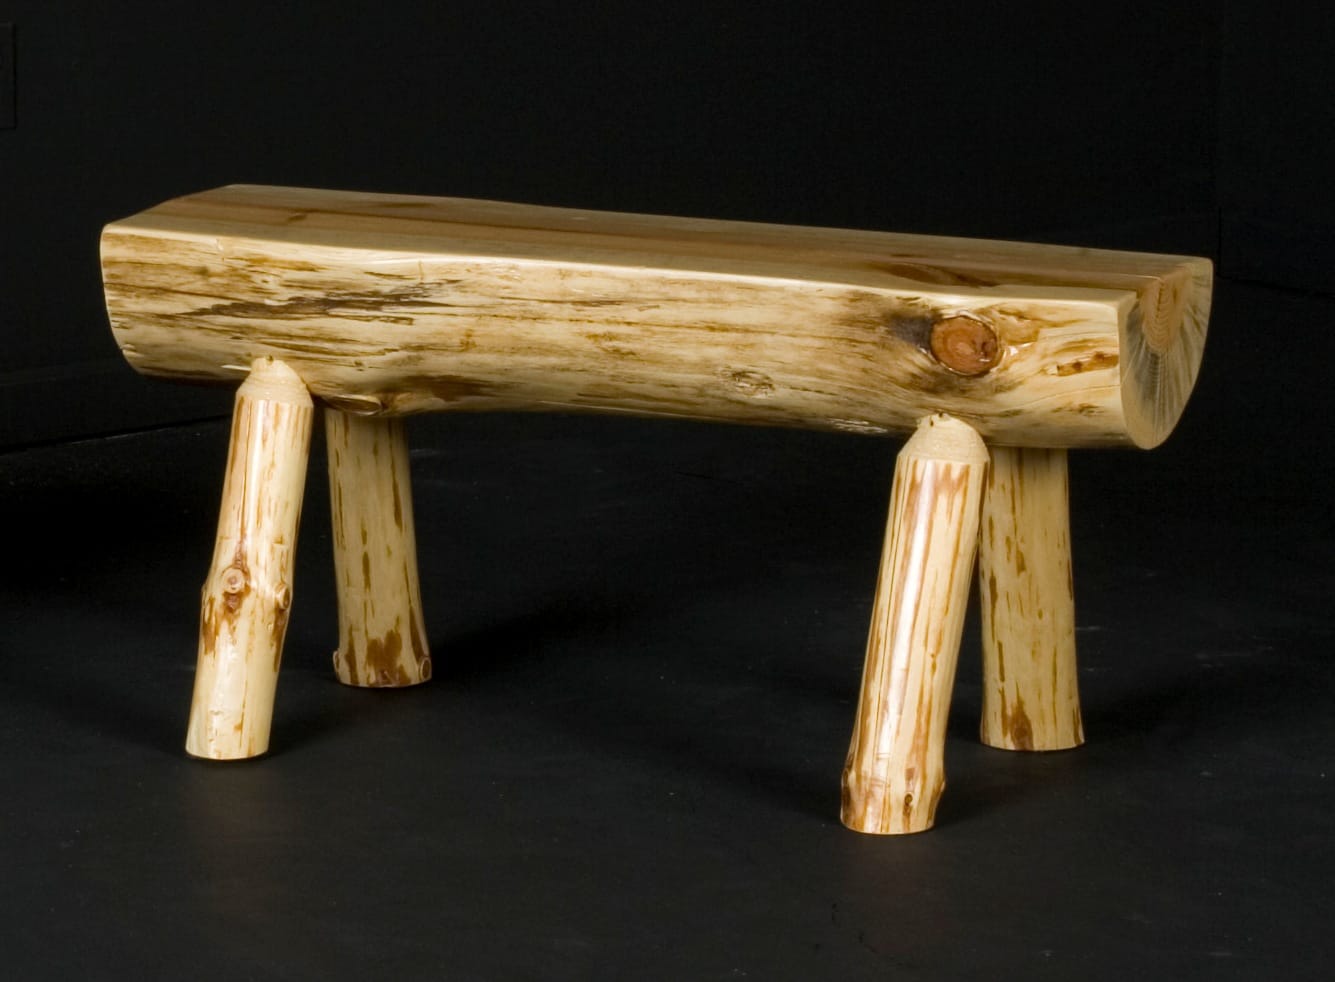 Half 24 Log Bench By Viking Log Furniture